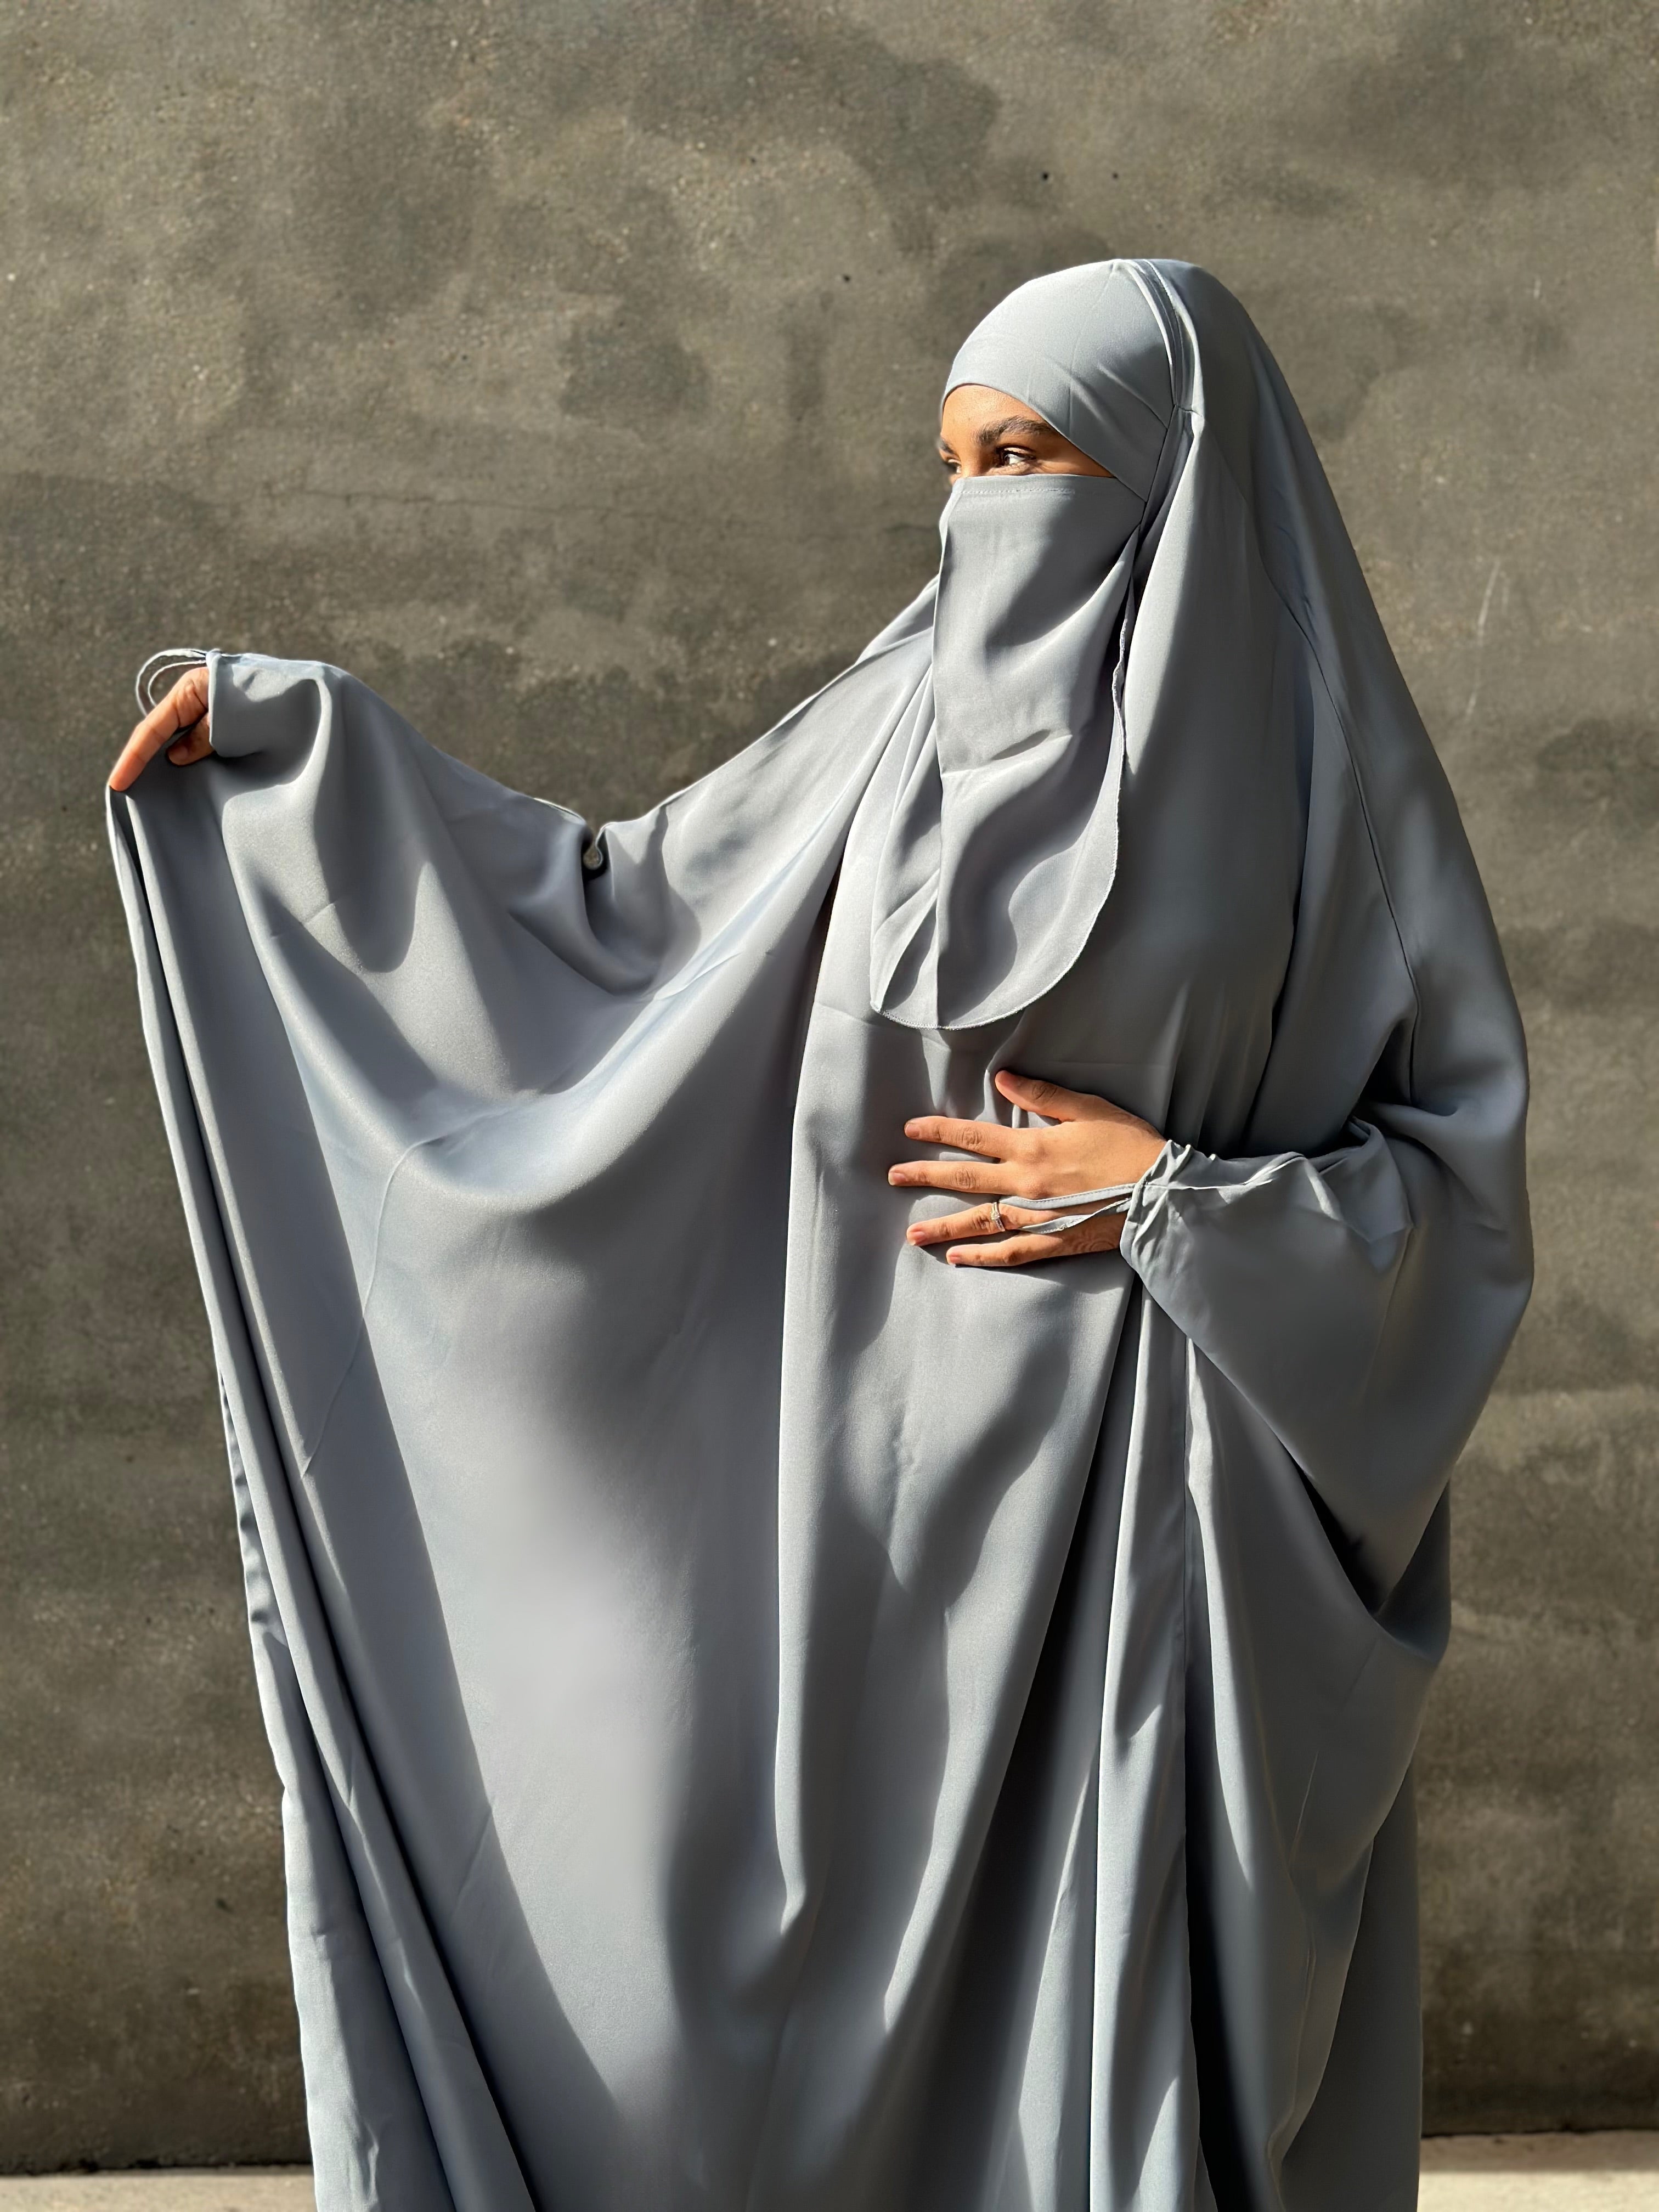 La Beauté de la Discrétion : Porter le Voile dans la Foi Islamique